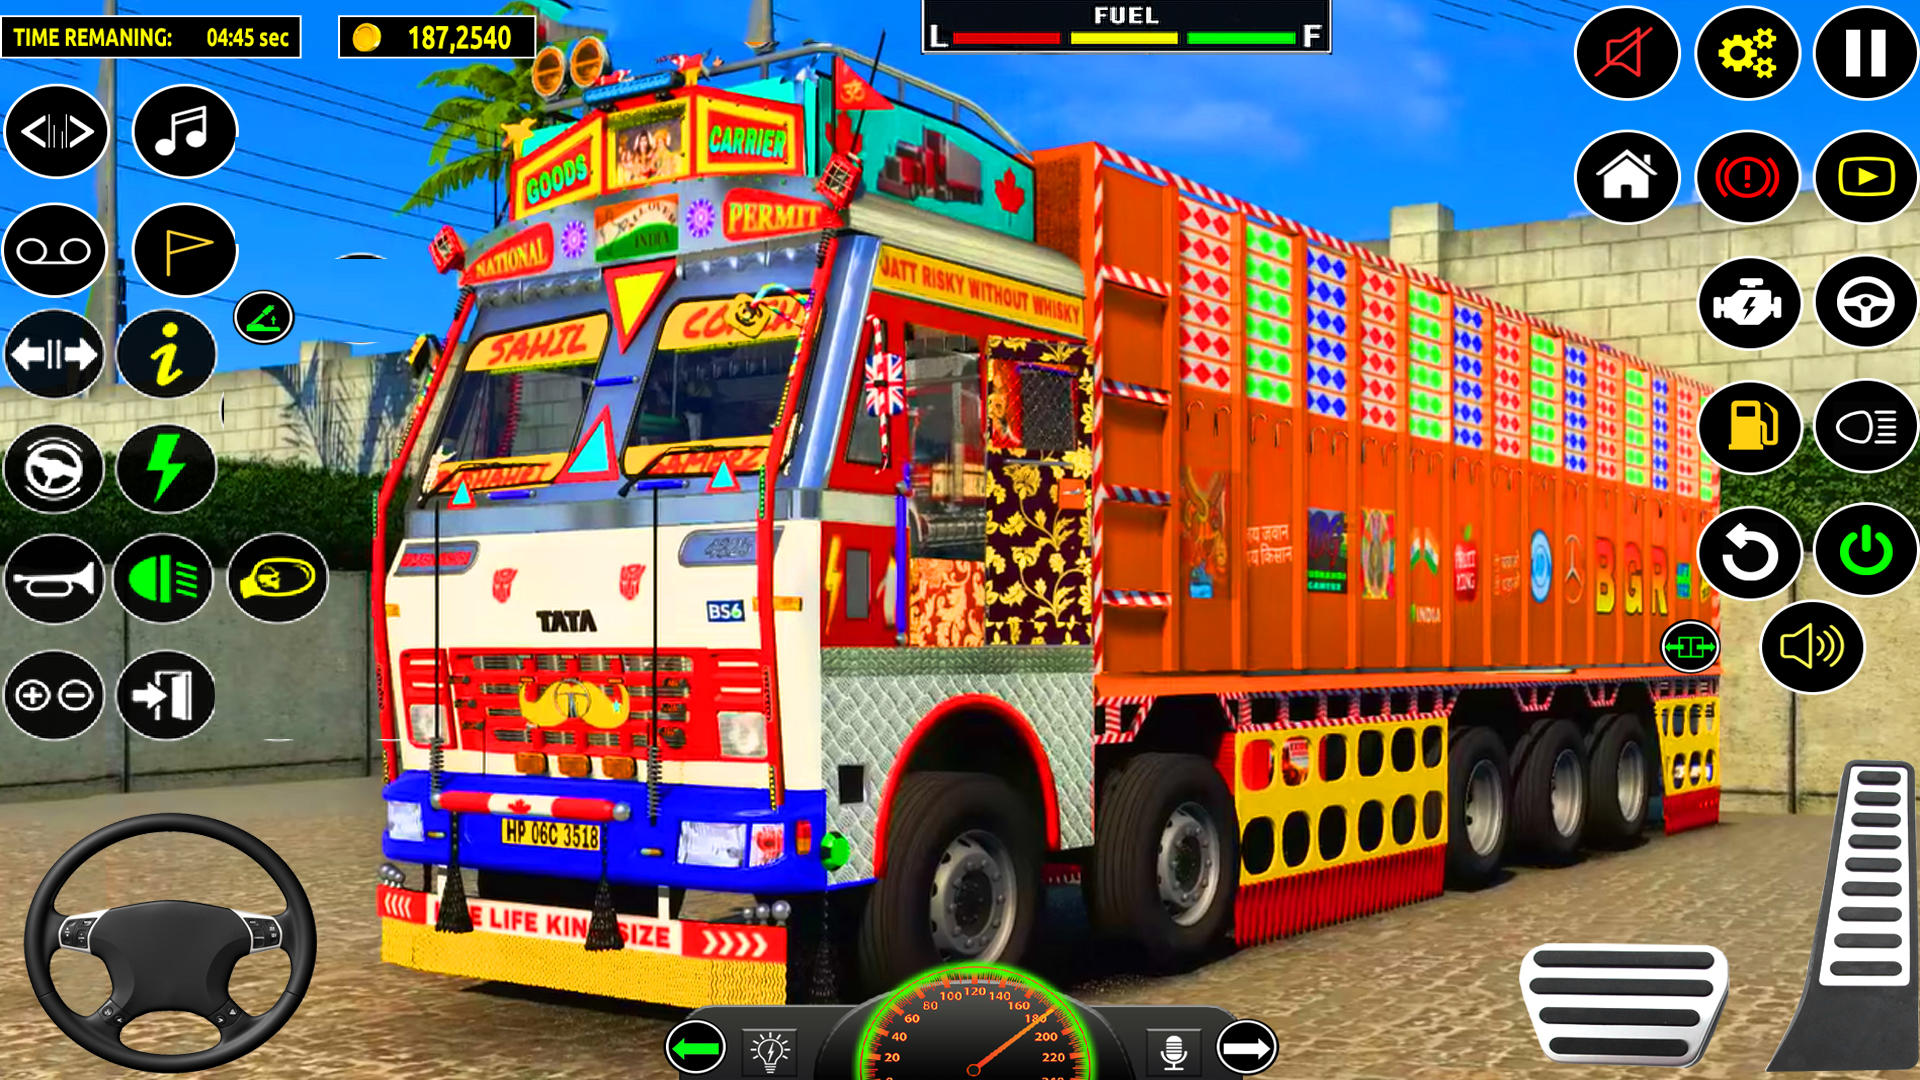 Screenshot 1 of Juego de conducción de camione 0.6